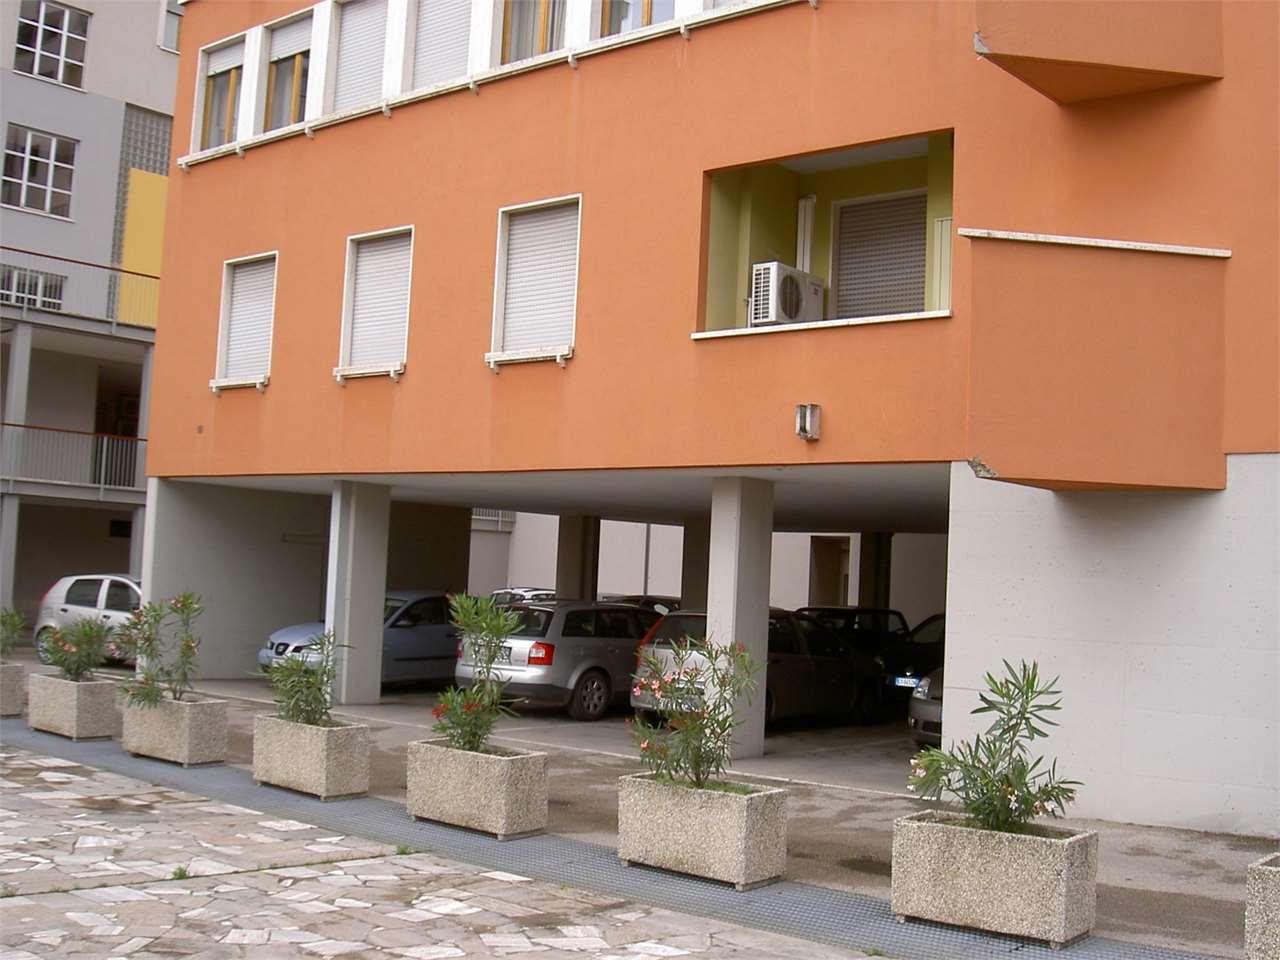 Perugia ufficio vicinanze uffici finanziari